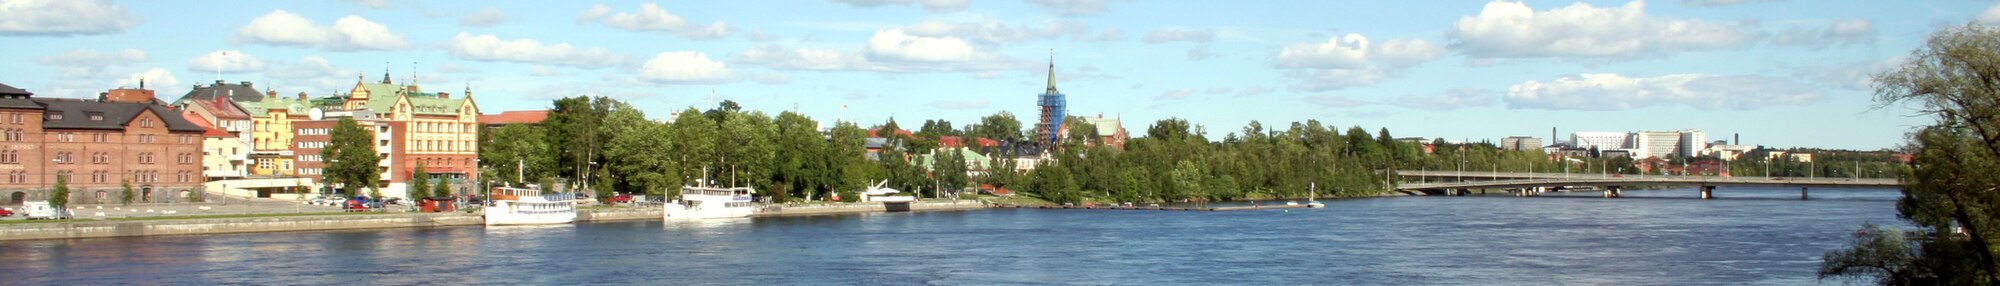 Umeå egy folyóparti városképe